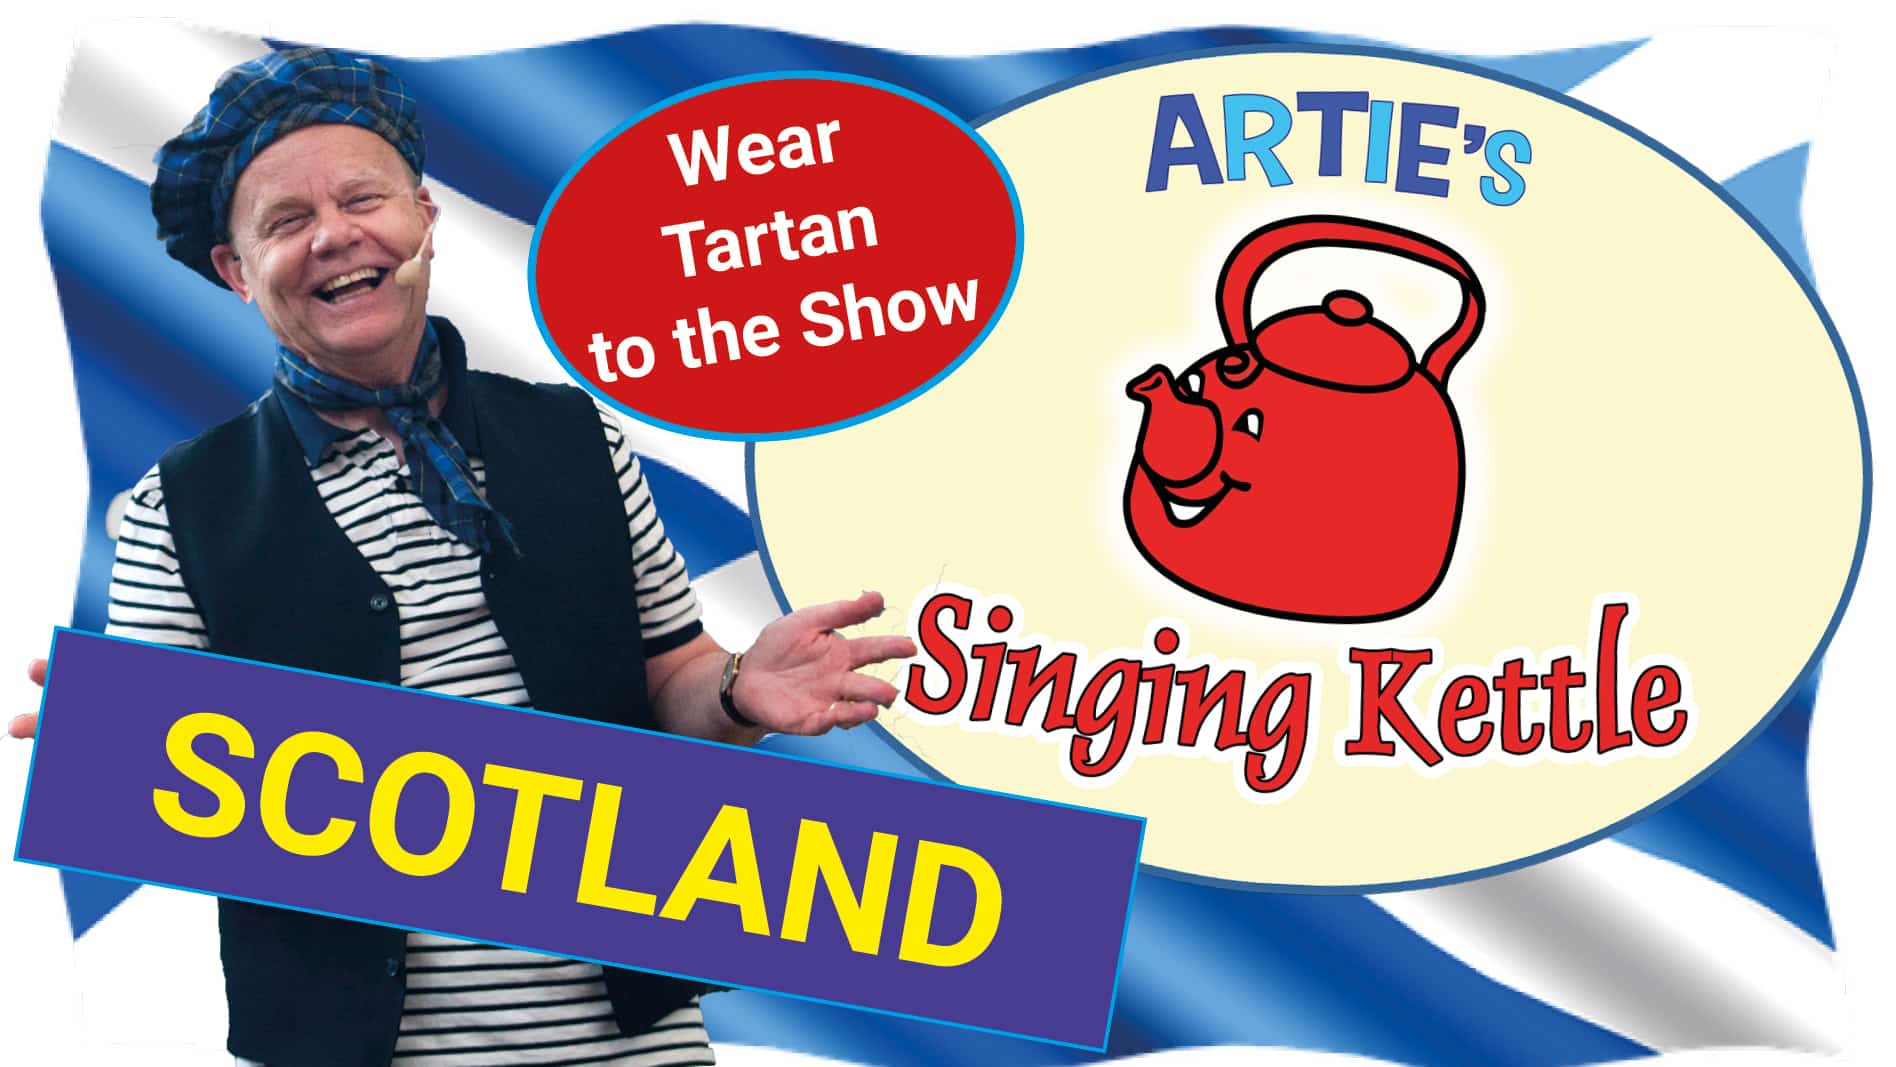 Artie’s Singing Kettle Scotland